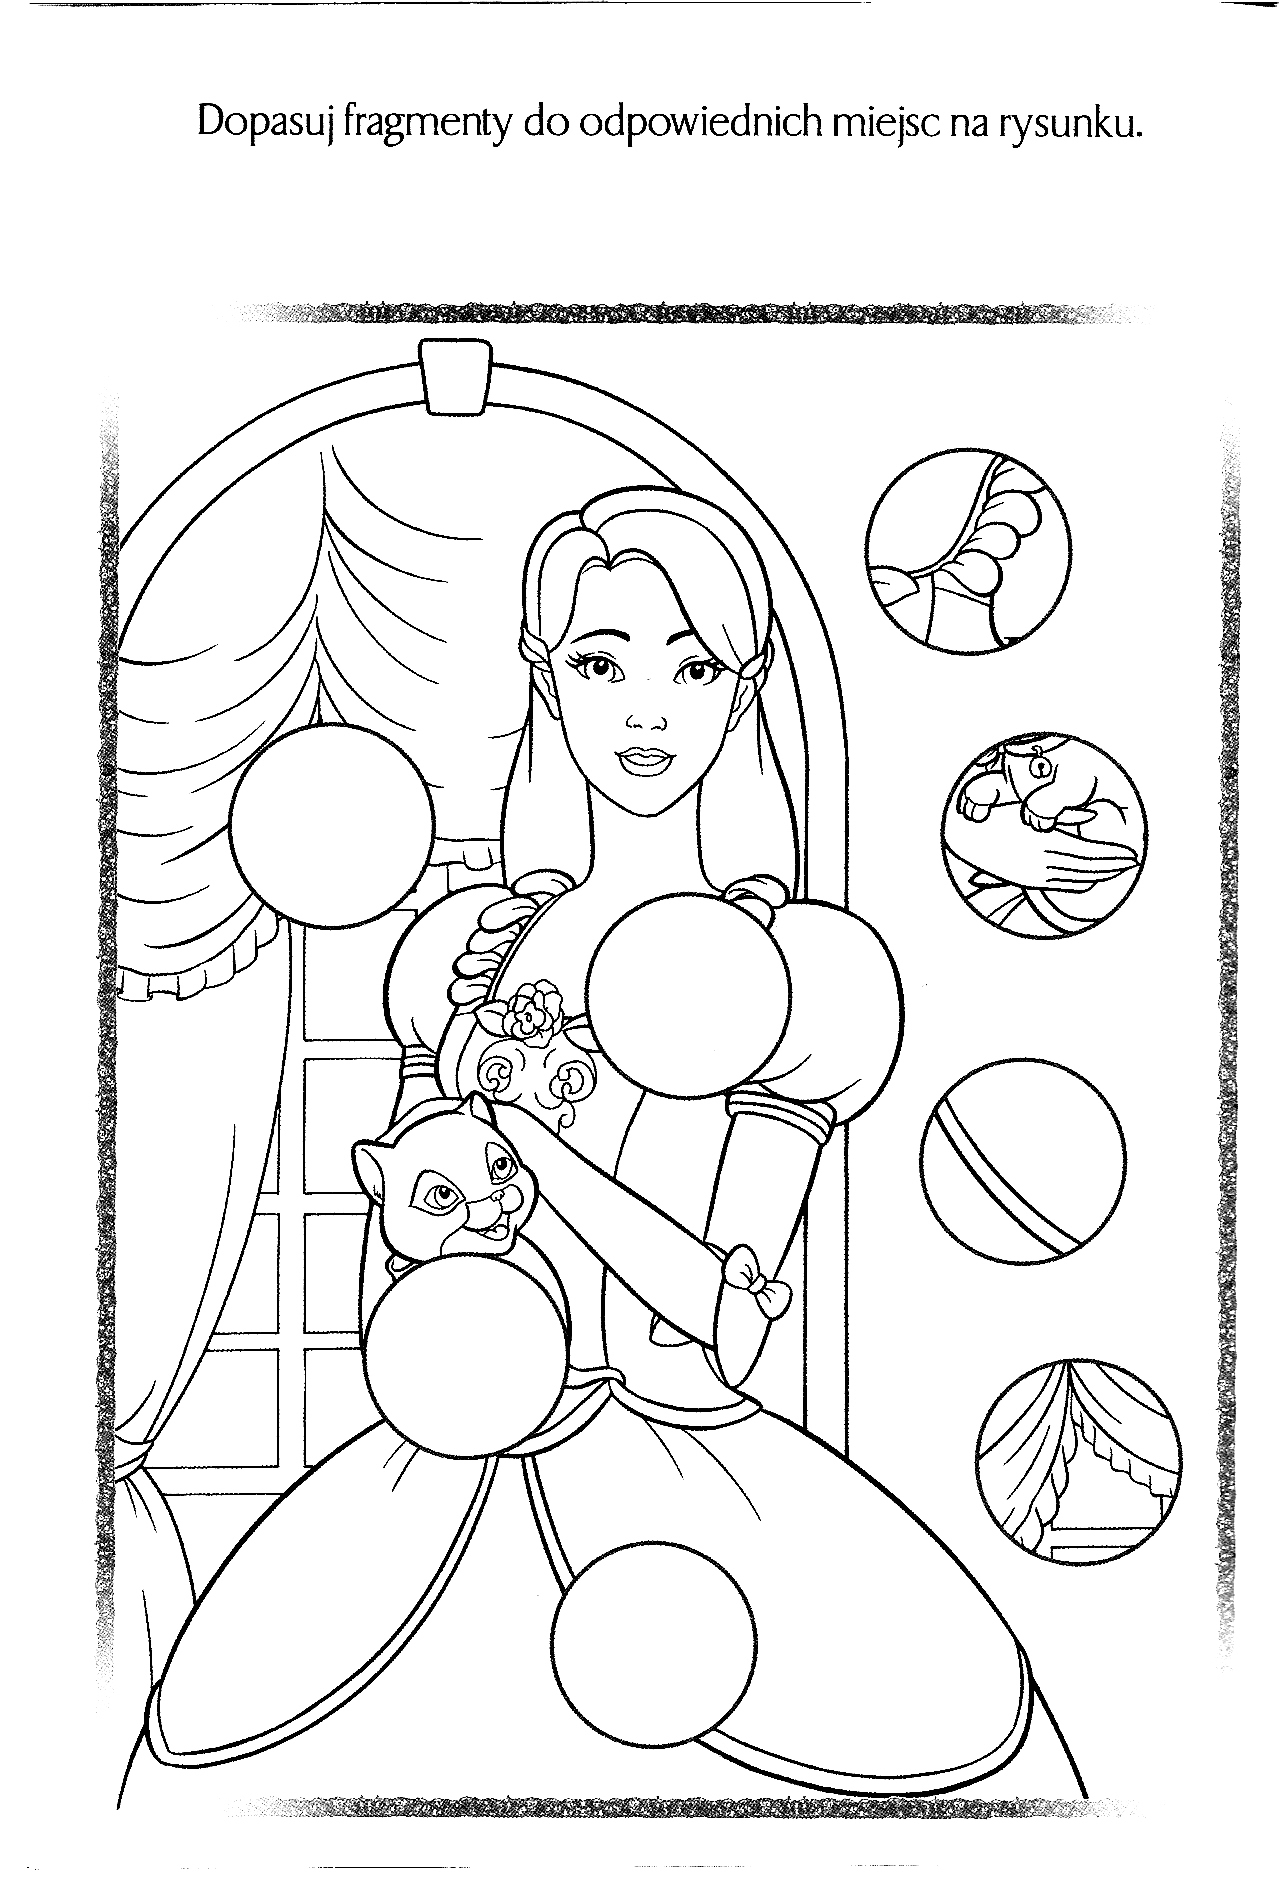 Kolorowanka księżniczka stoi w sukni z kotem w ręce pod oknem do dopasowania elementów